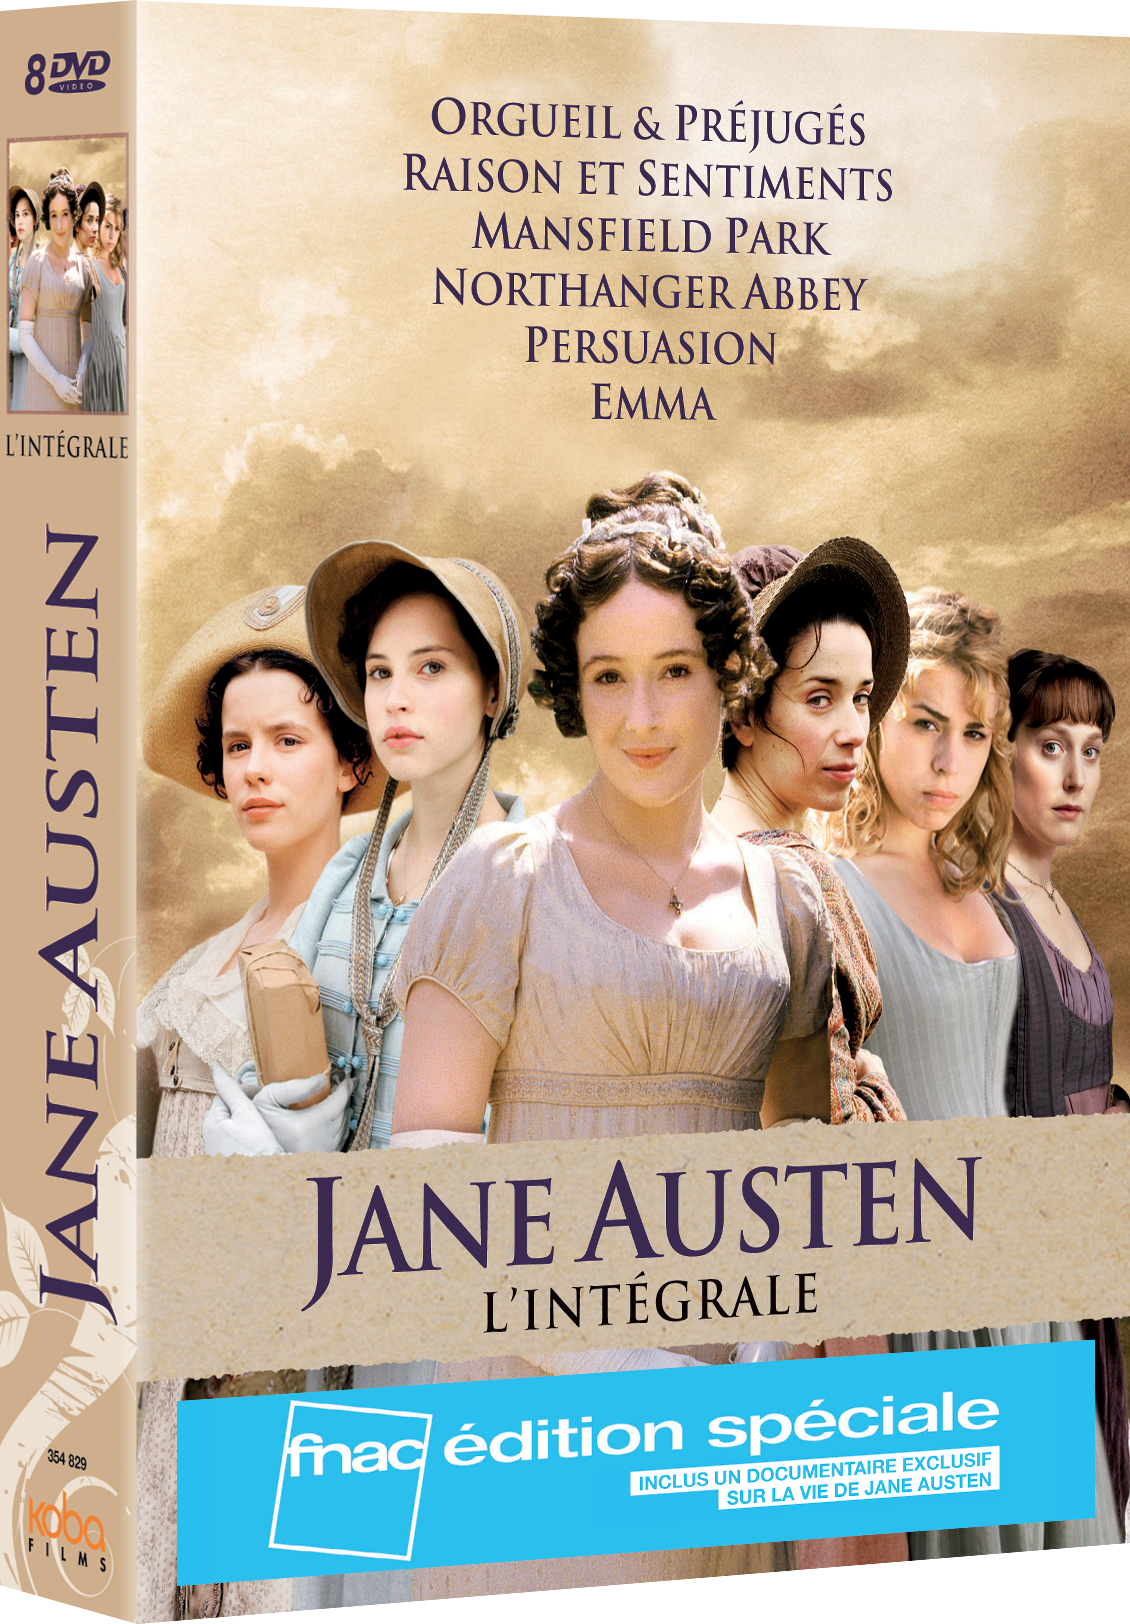 JANE AUSTEN - L'INTEGRALE ED SPEC FNAC (8 DVD)